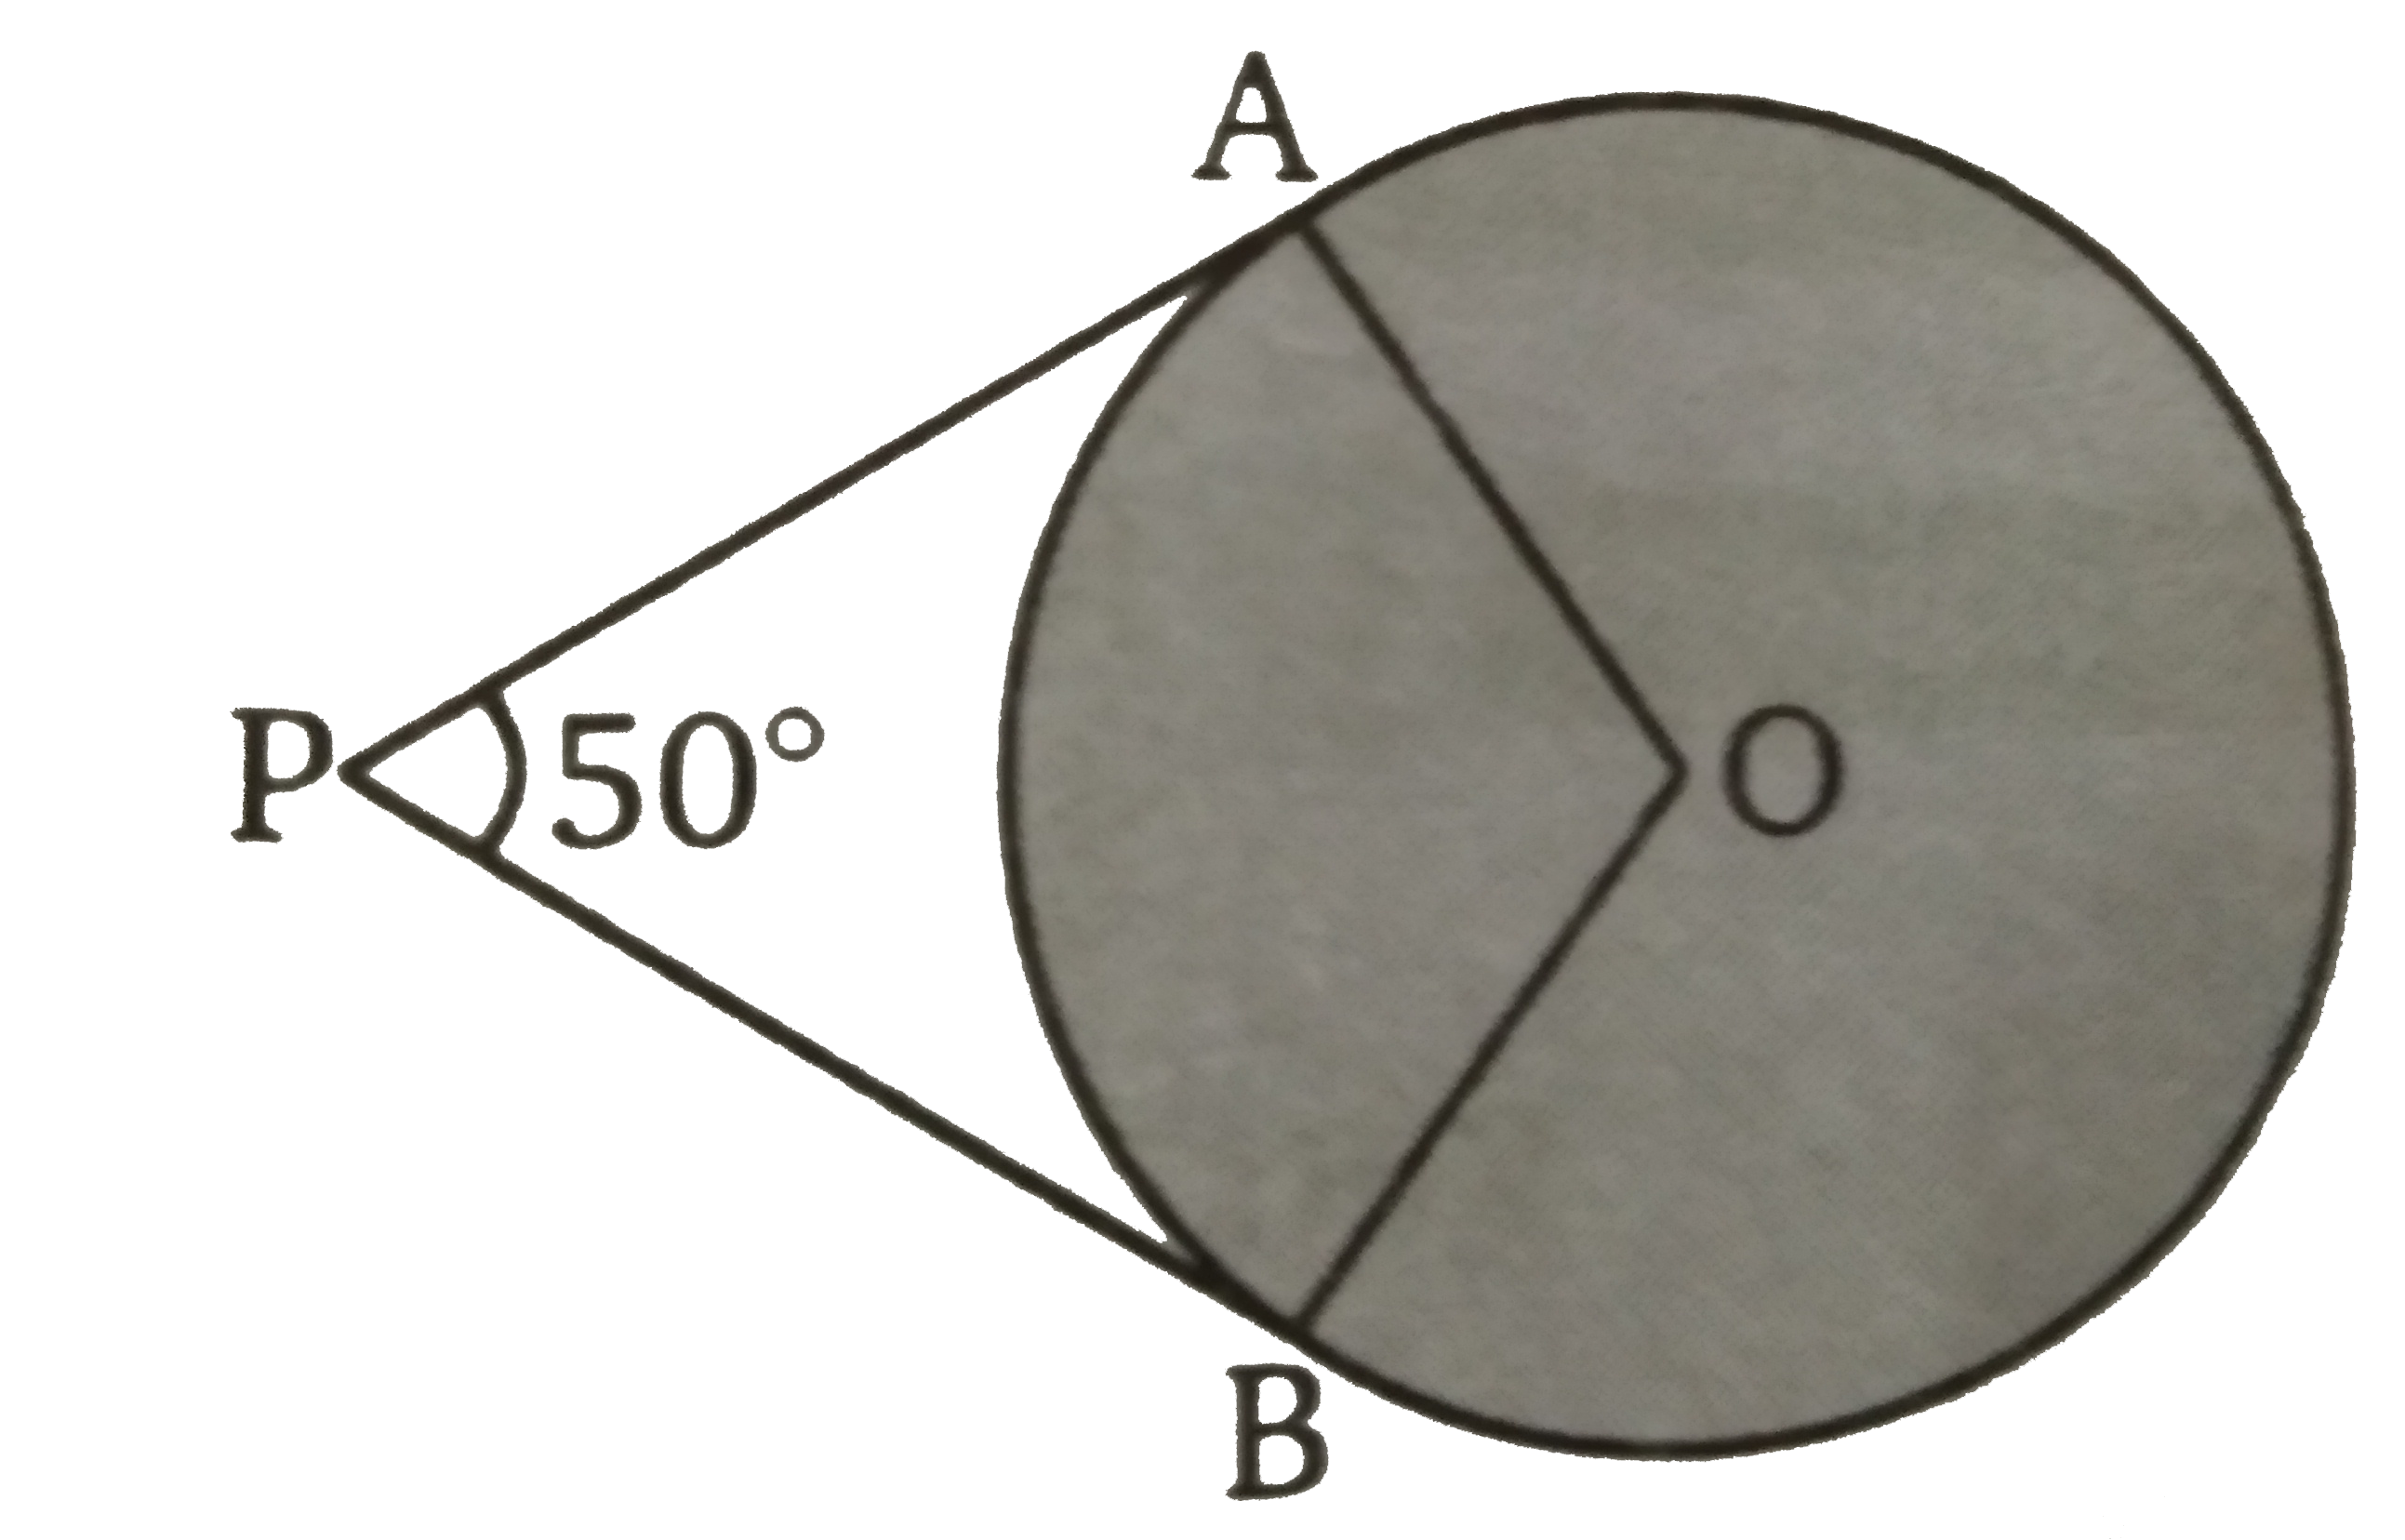 संलग्न चित्र में O  केंद्र का वृत्त की दो स्पर्शी PA  व PB  हैं। यदि angle APB = 50^(@)   तब angleAOB  का मान ज्ञात कीजिए ।